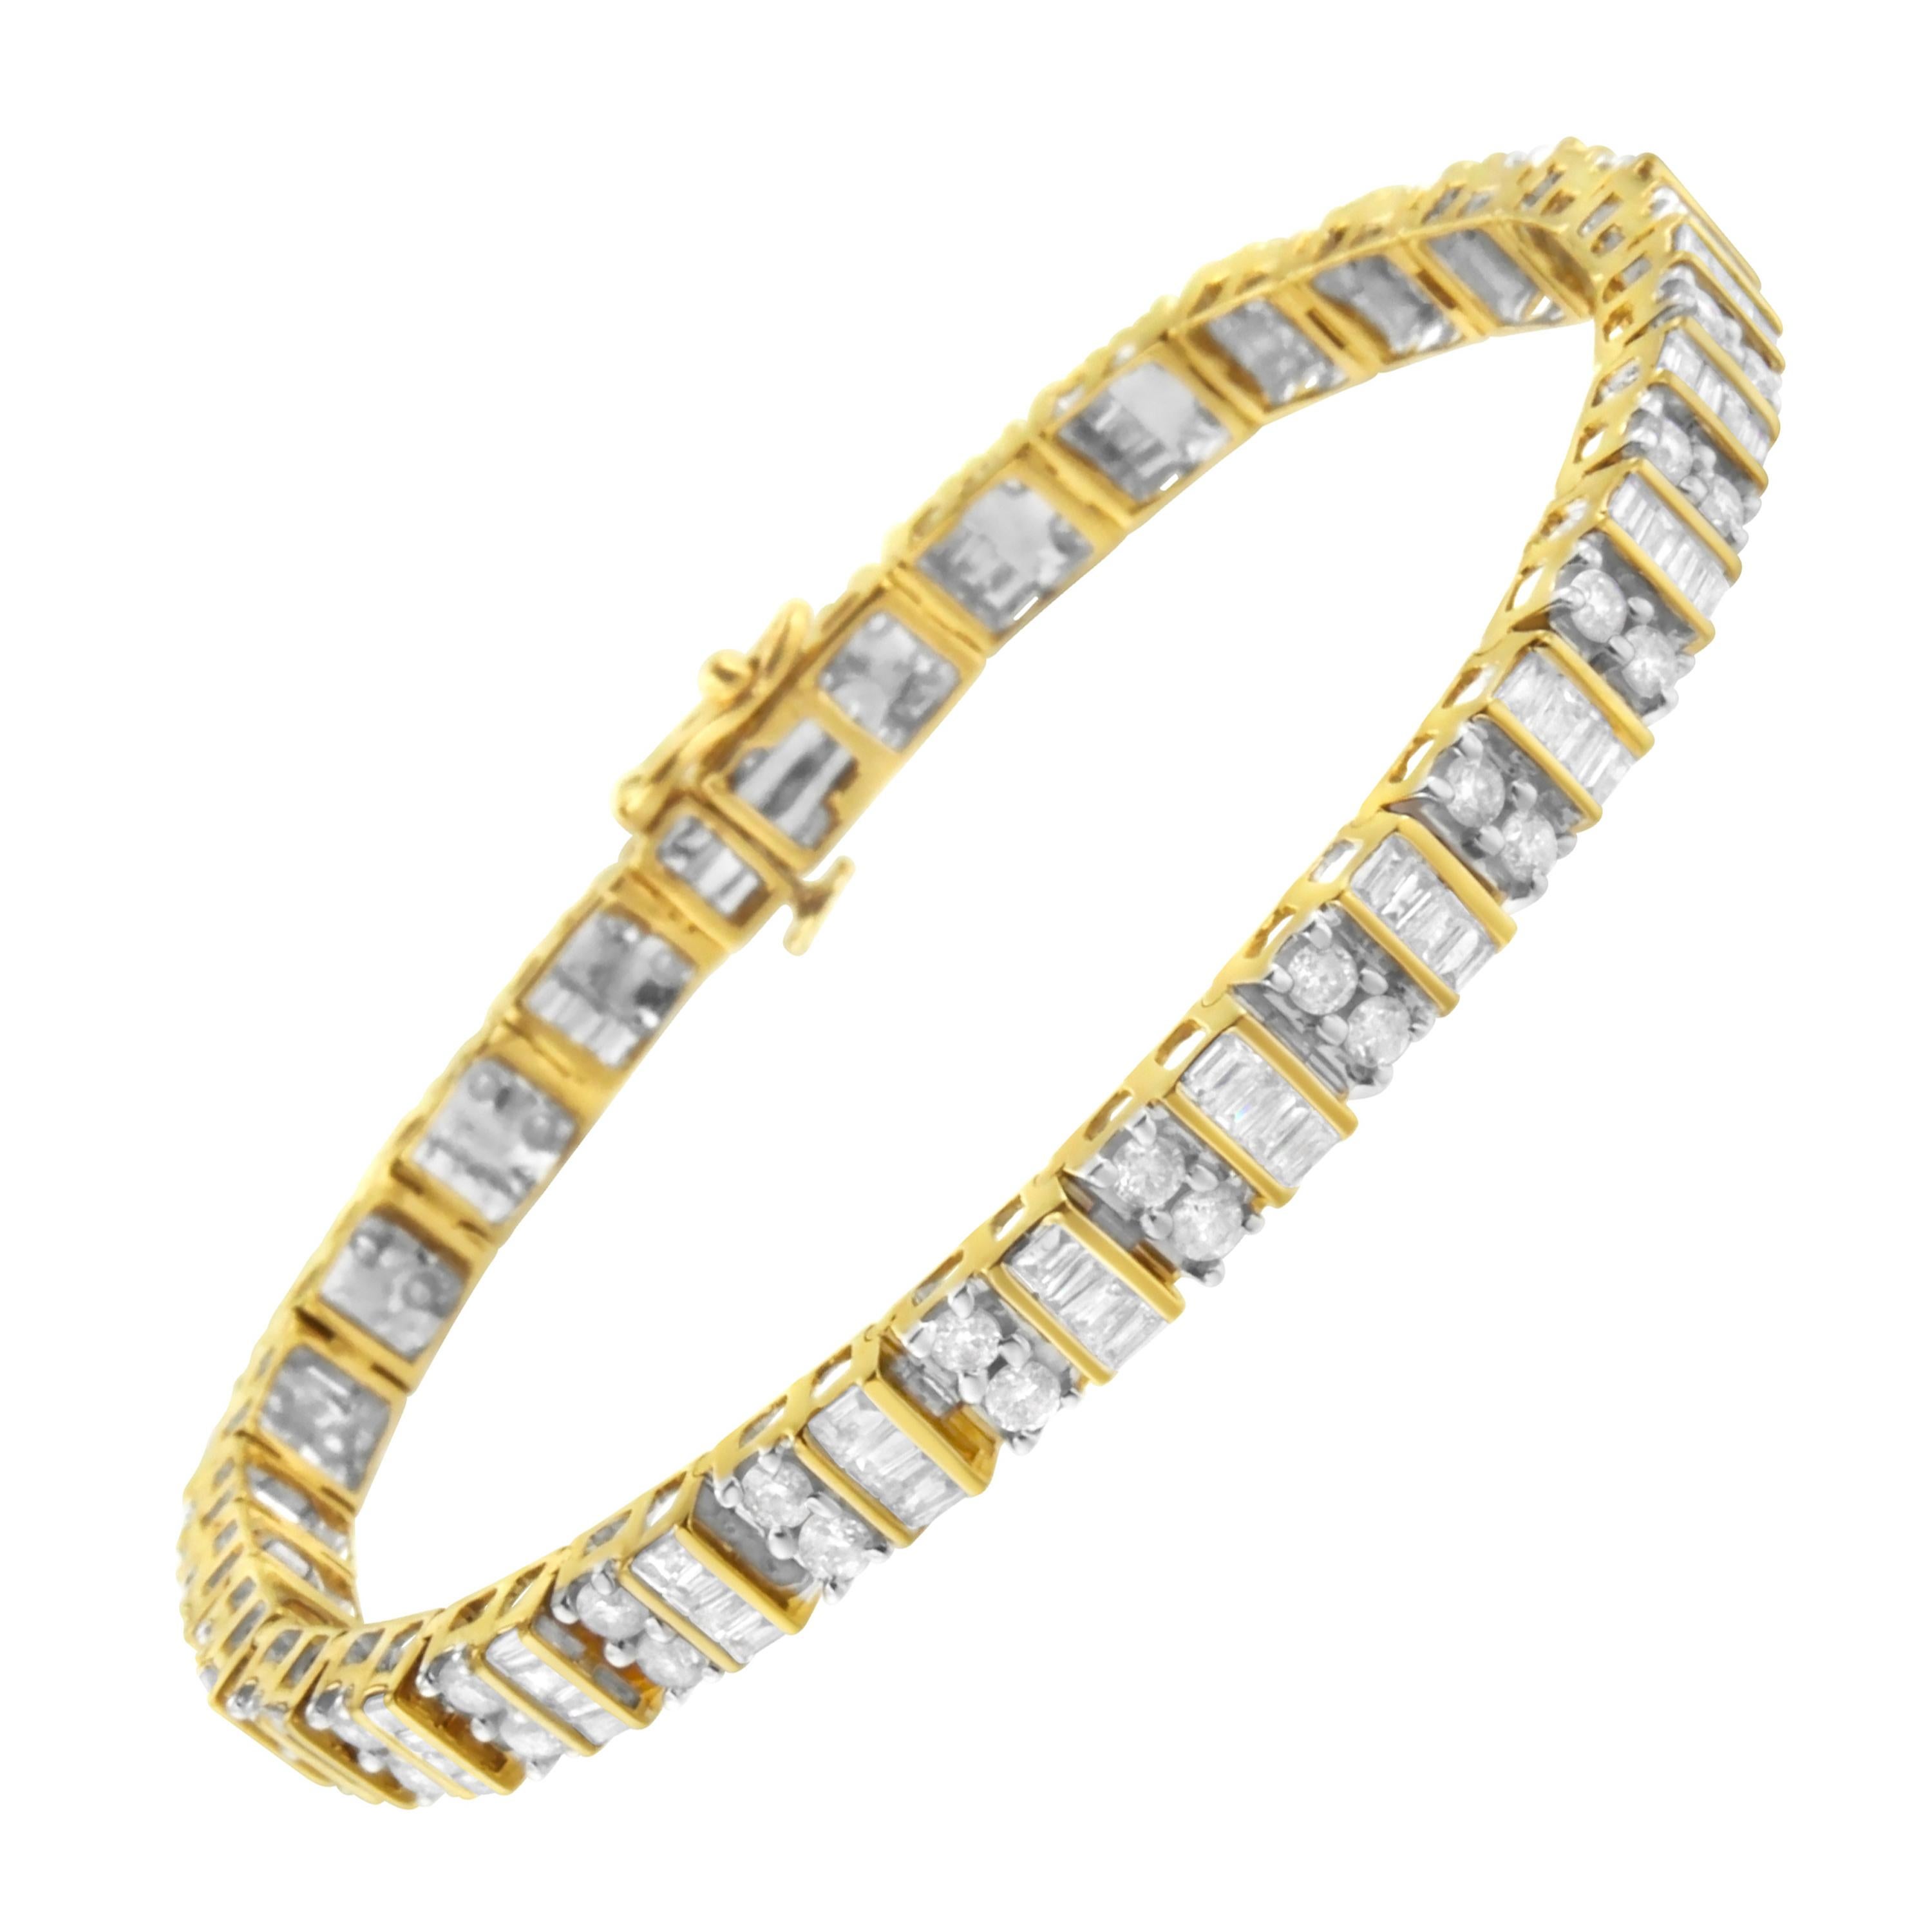 Bracelet tennis en or jaune 10 carats avec diamants taille baguette et ronde de 4,0 carats au total